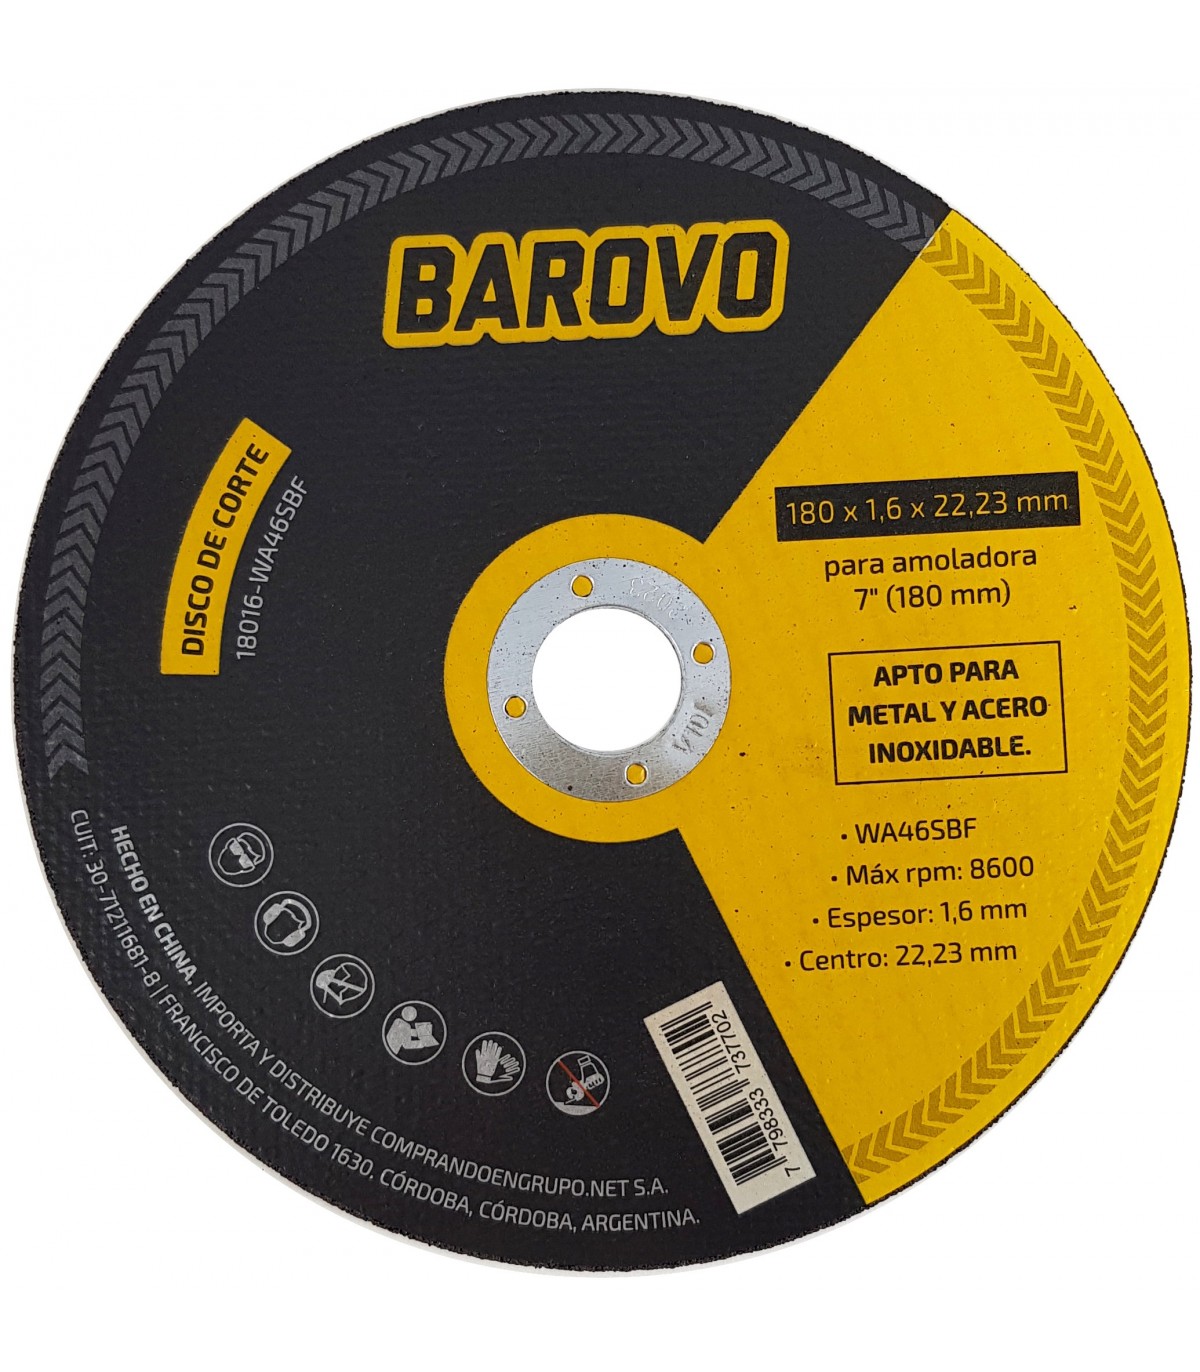 Disco de corte para amoladora 7" espesor Barovo